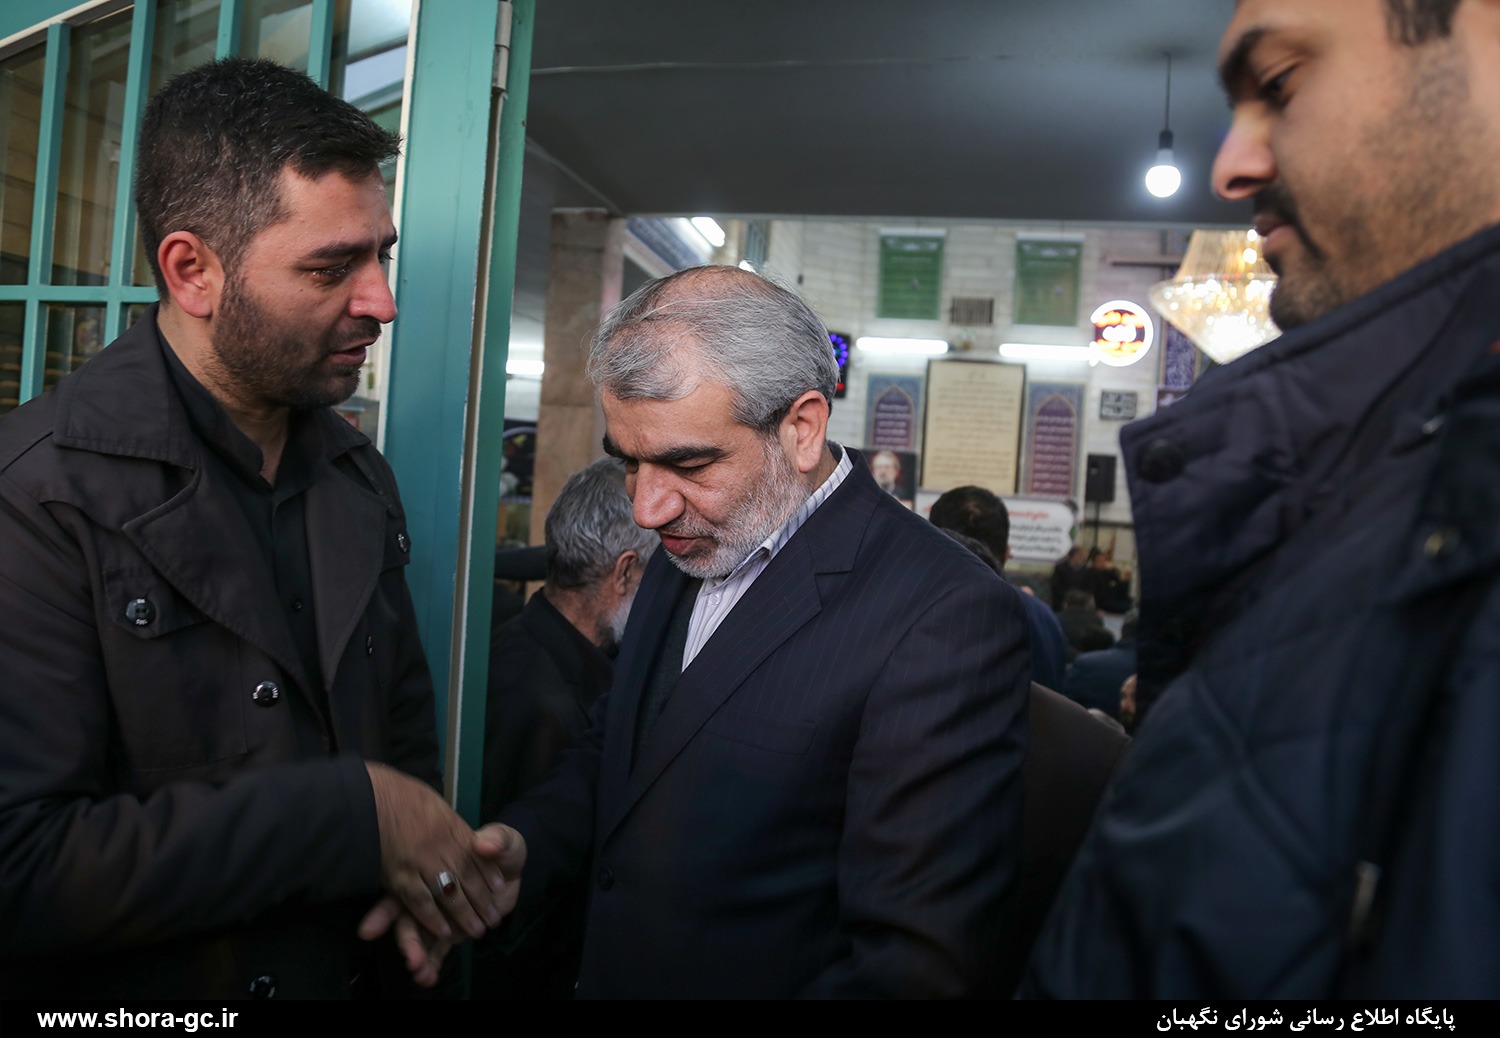 حضور دکتر کدخدایی در مراسم ترحیم خبرنگار خبرگزاری فارس